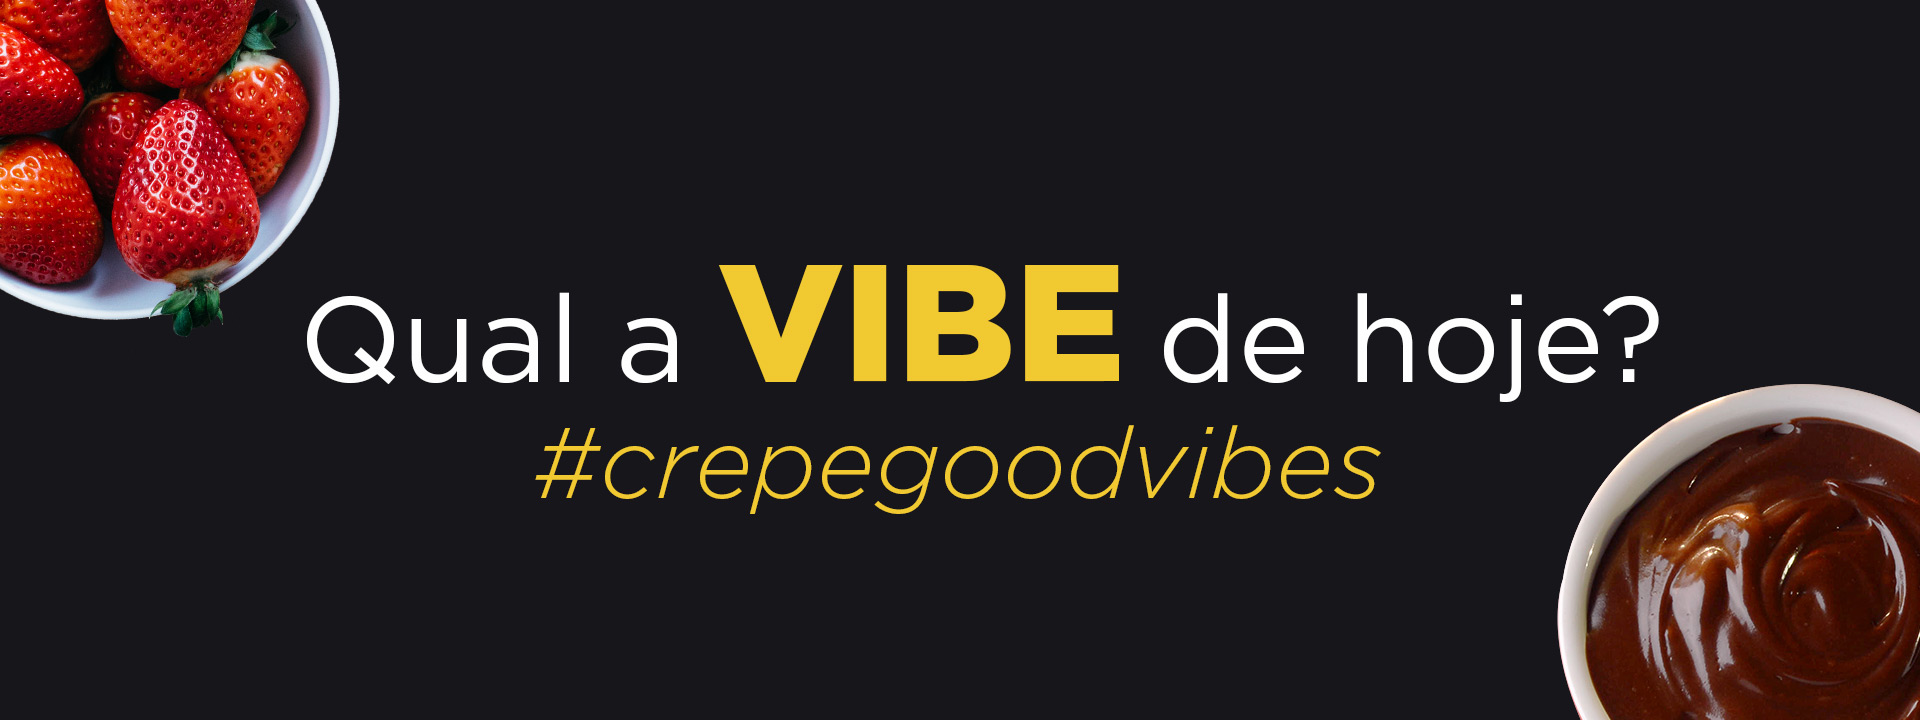 Crepelocks - Crepe Good Vibes